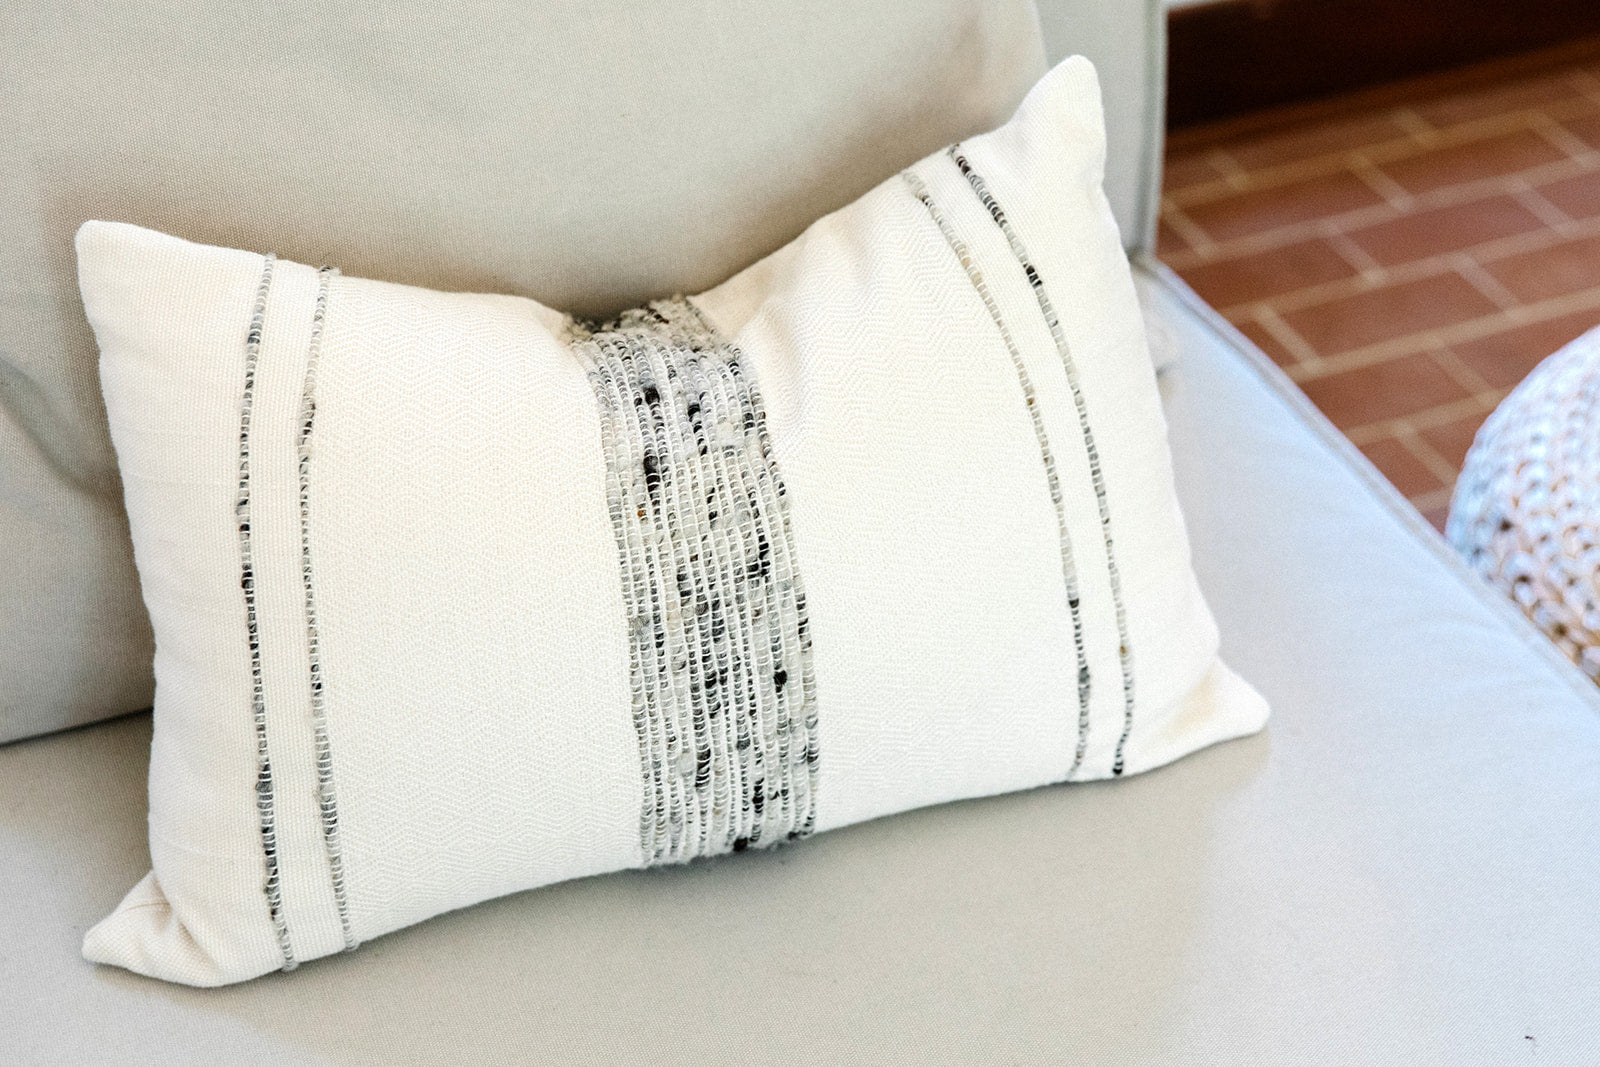 Bogota Lumbar Pillow - Grey